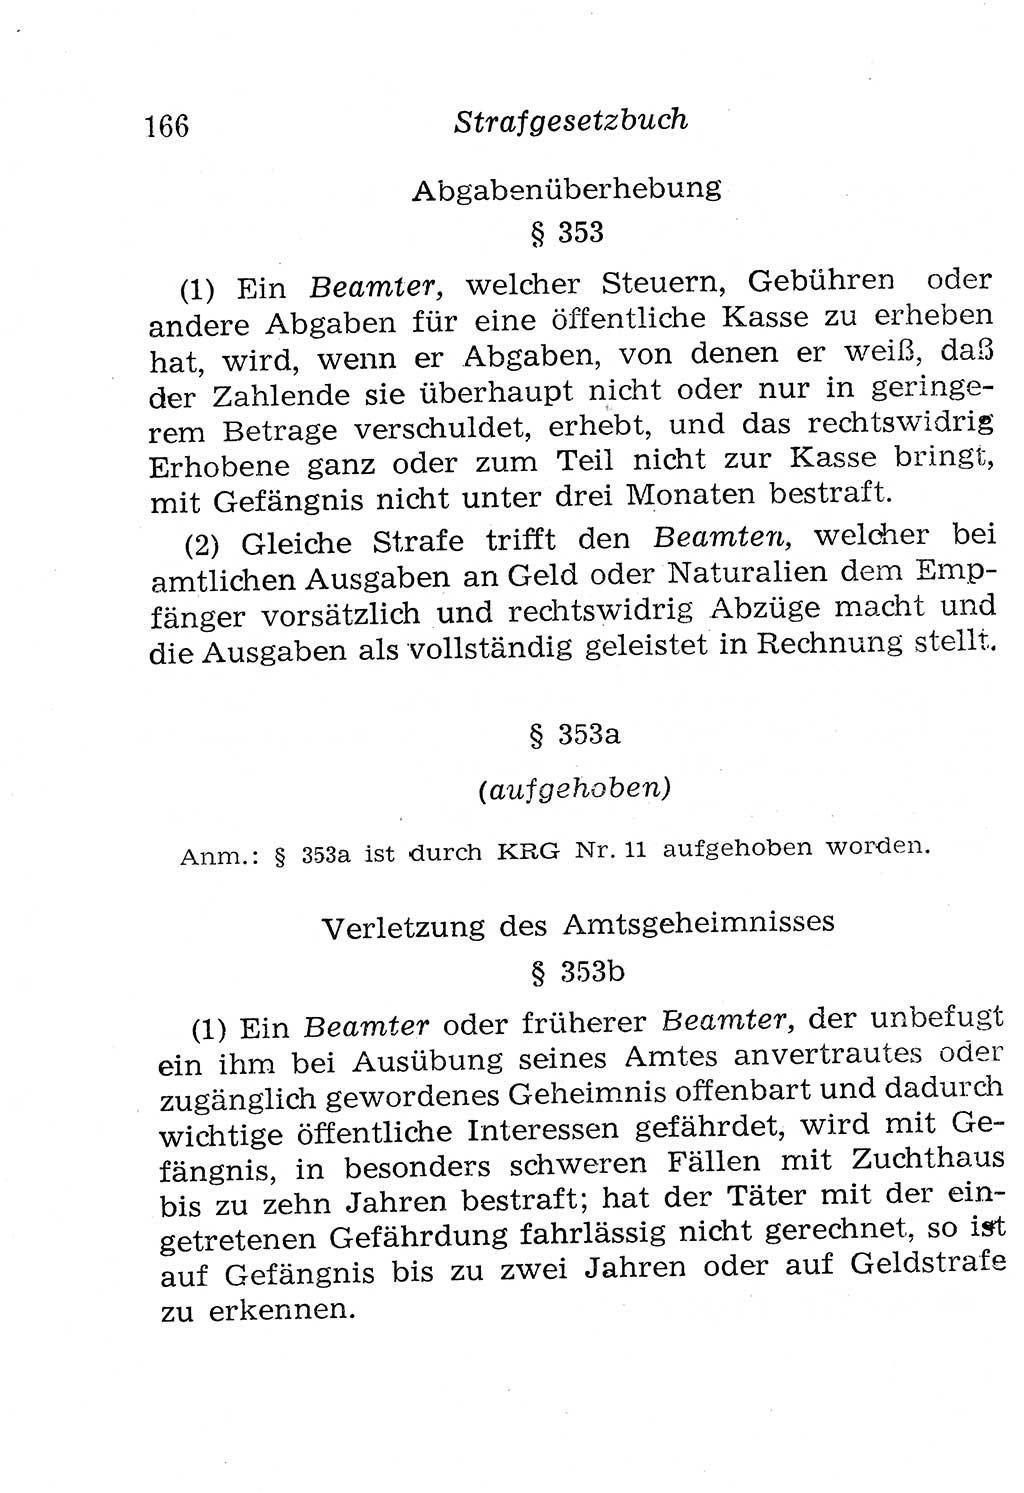 Strafgesetzbuch (StGB) und andere Strafgesetze [Deutsche Demokratische Republik (DDR)] 1958, Seite 166 (StGB Strafges. DDR 1958, S. 166)